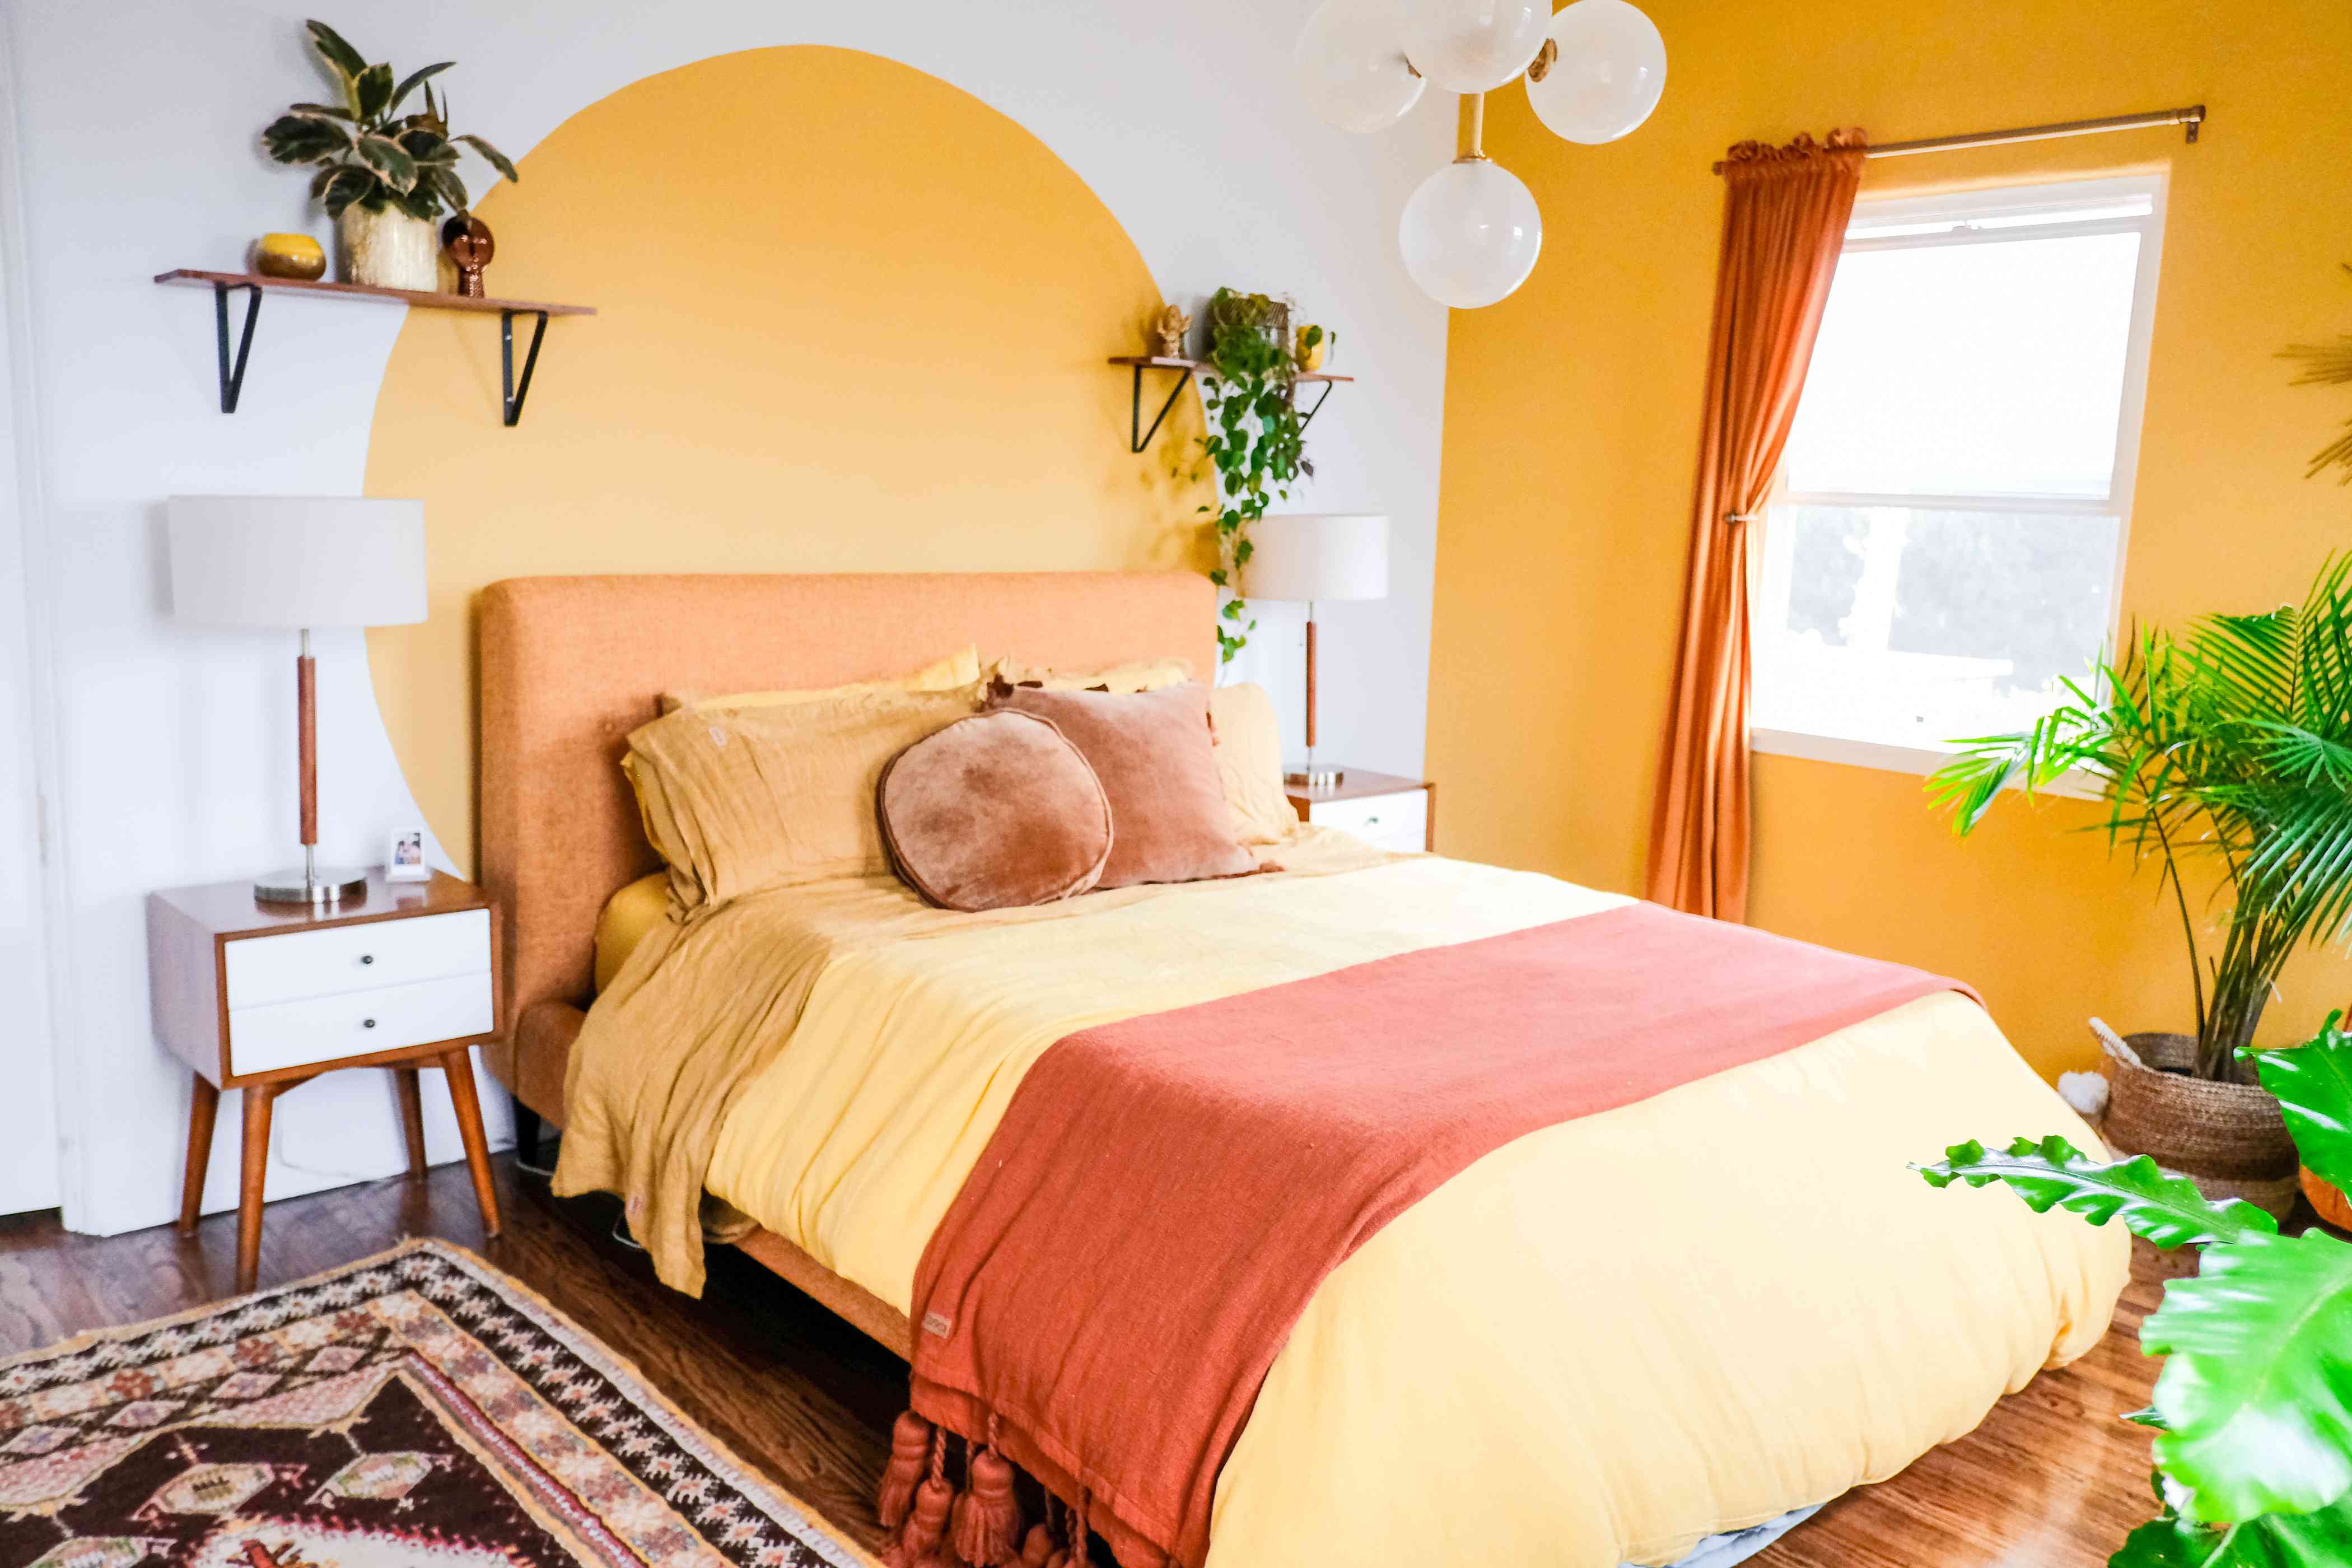 غرفة نوم بجدار أصفر لامع ولون محجوب بدائرة صفراء خلف السرير.